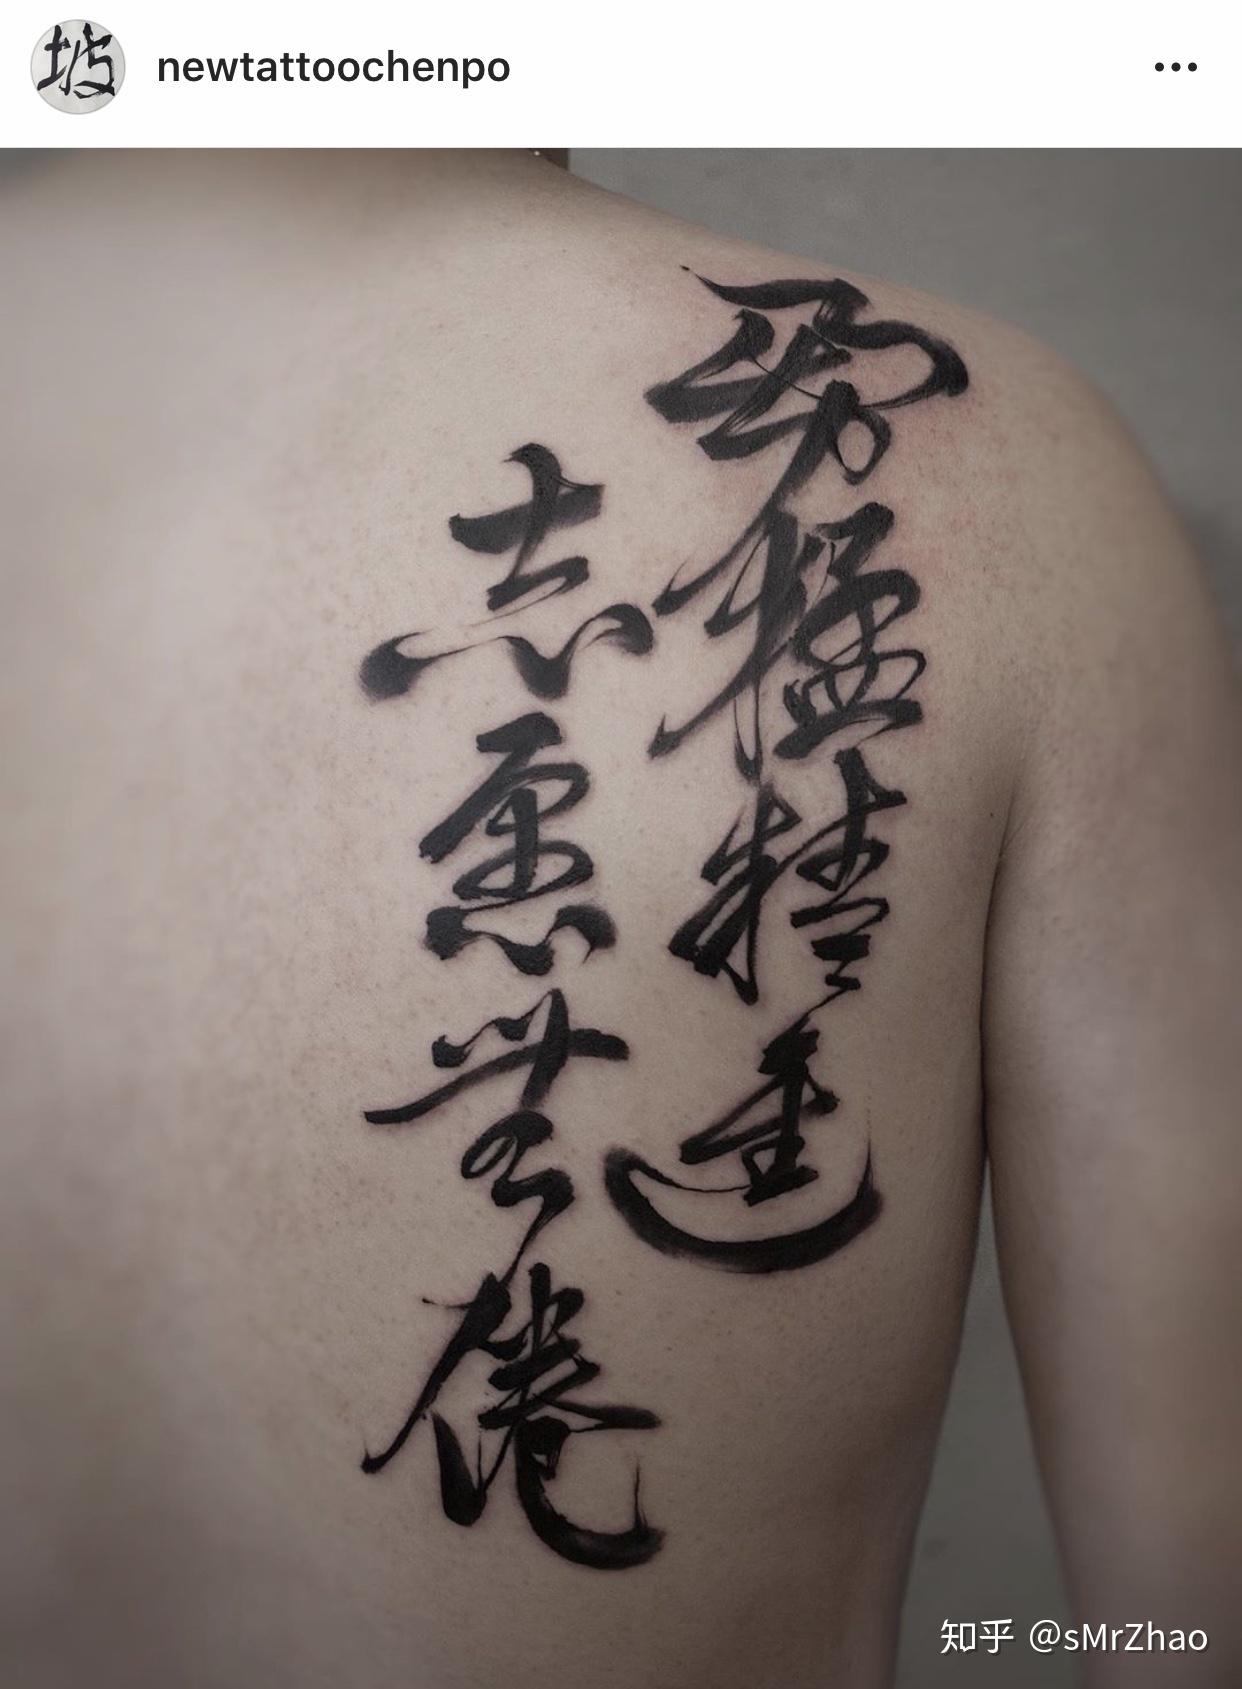 胸口汉字书法纹身图案 - 长春纹彩刺青